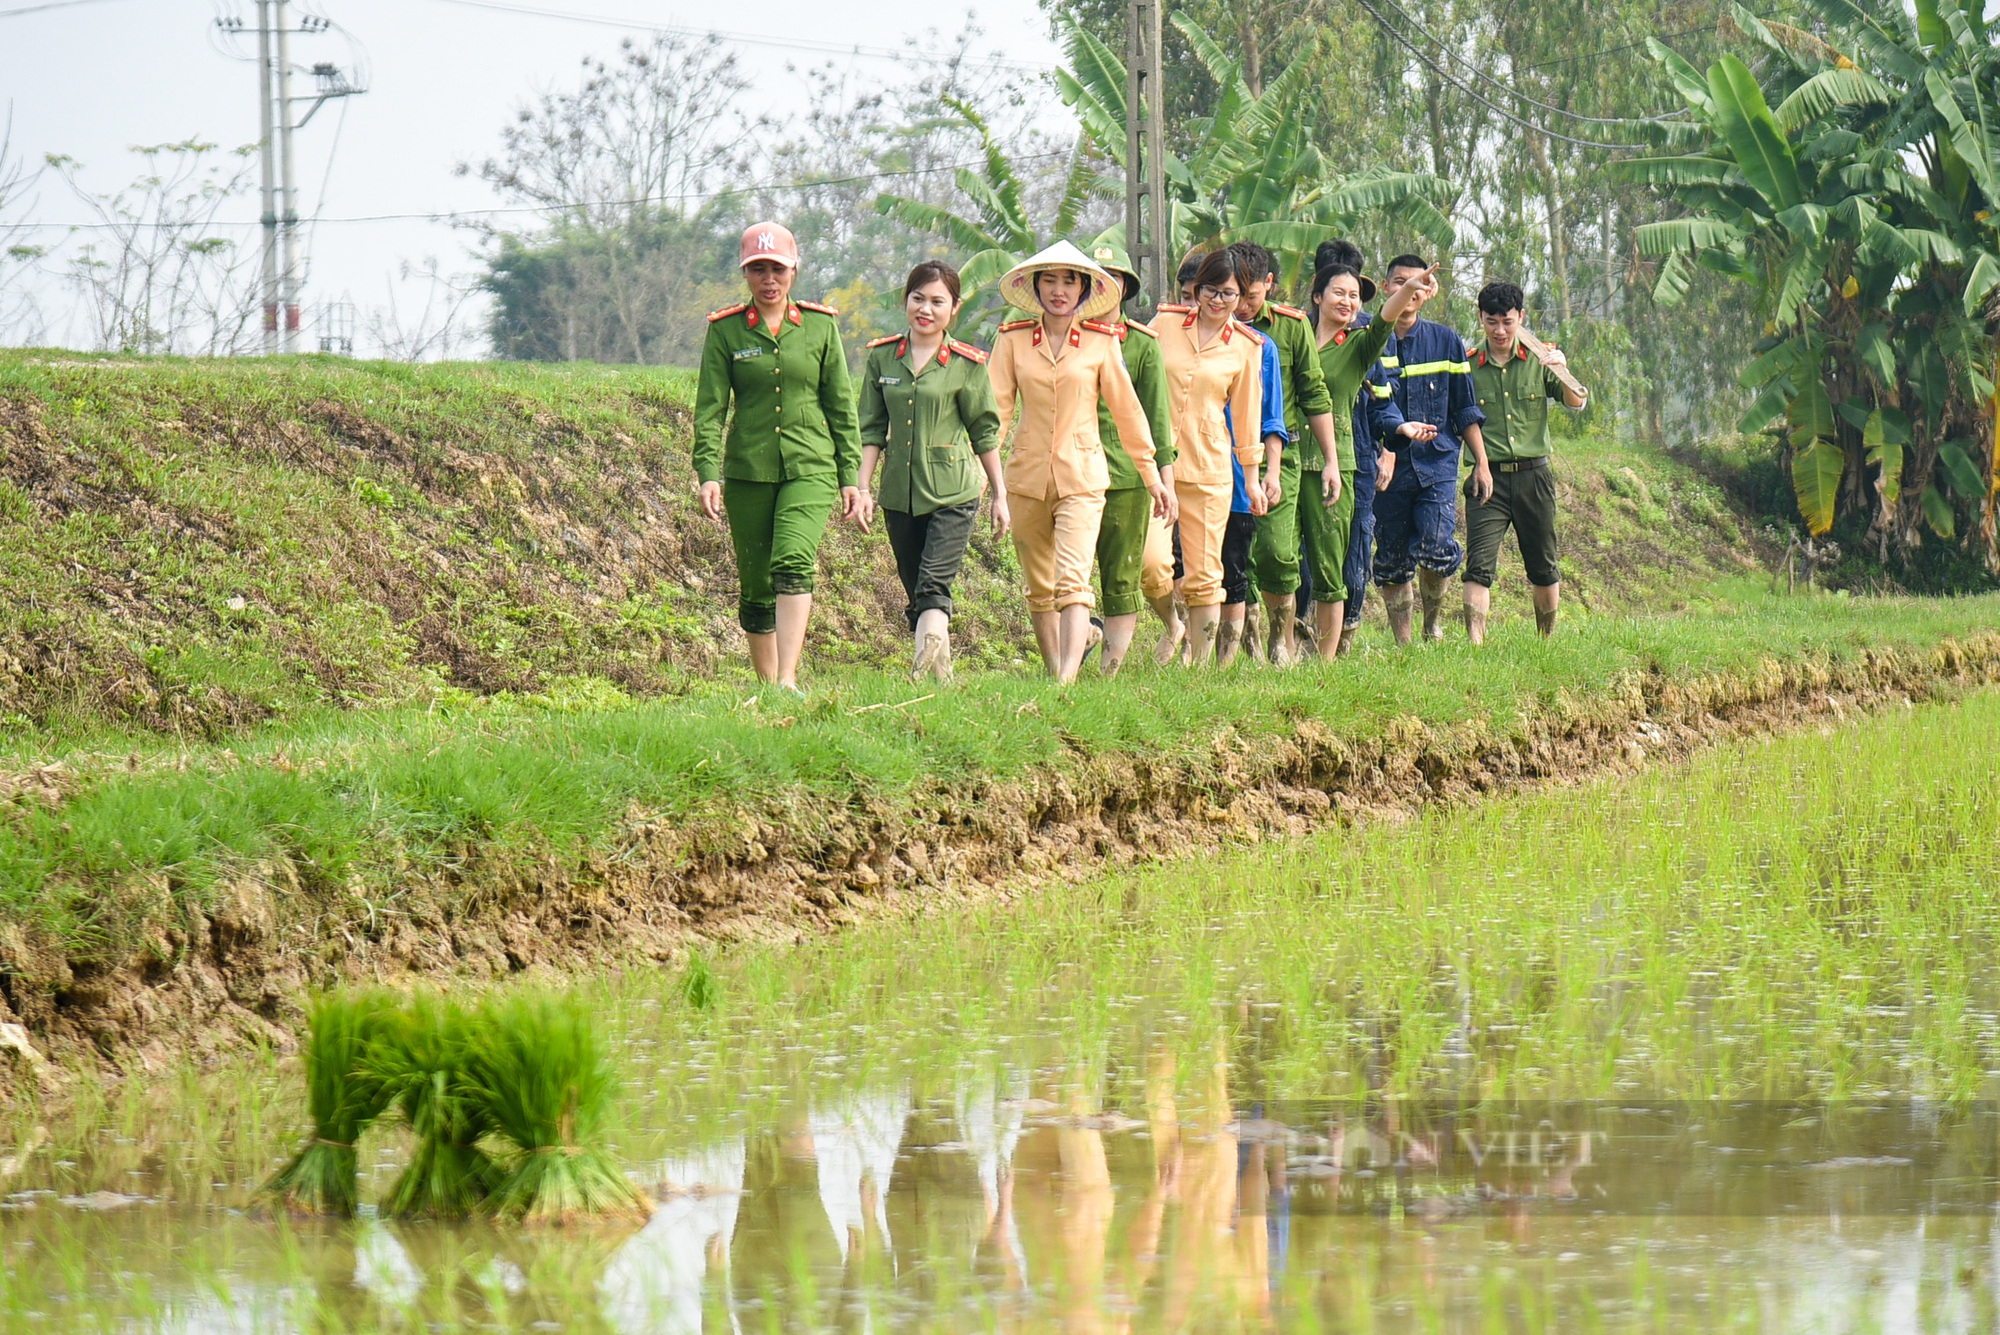 Hình ảnh Công an Thủ đô bì bõm lội ruộng giúp dân cấy lúa vụ Chiêm Xuân - Ảnh 2.